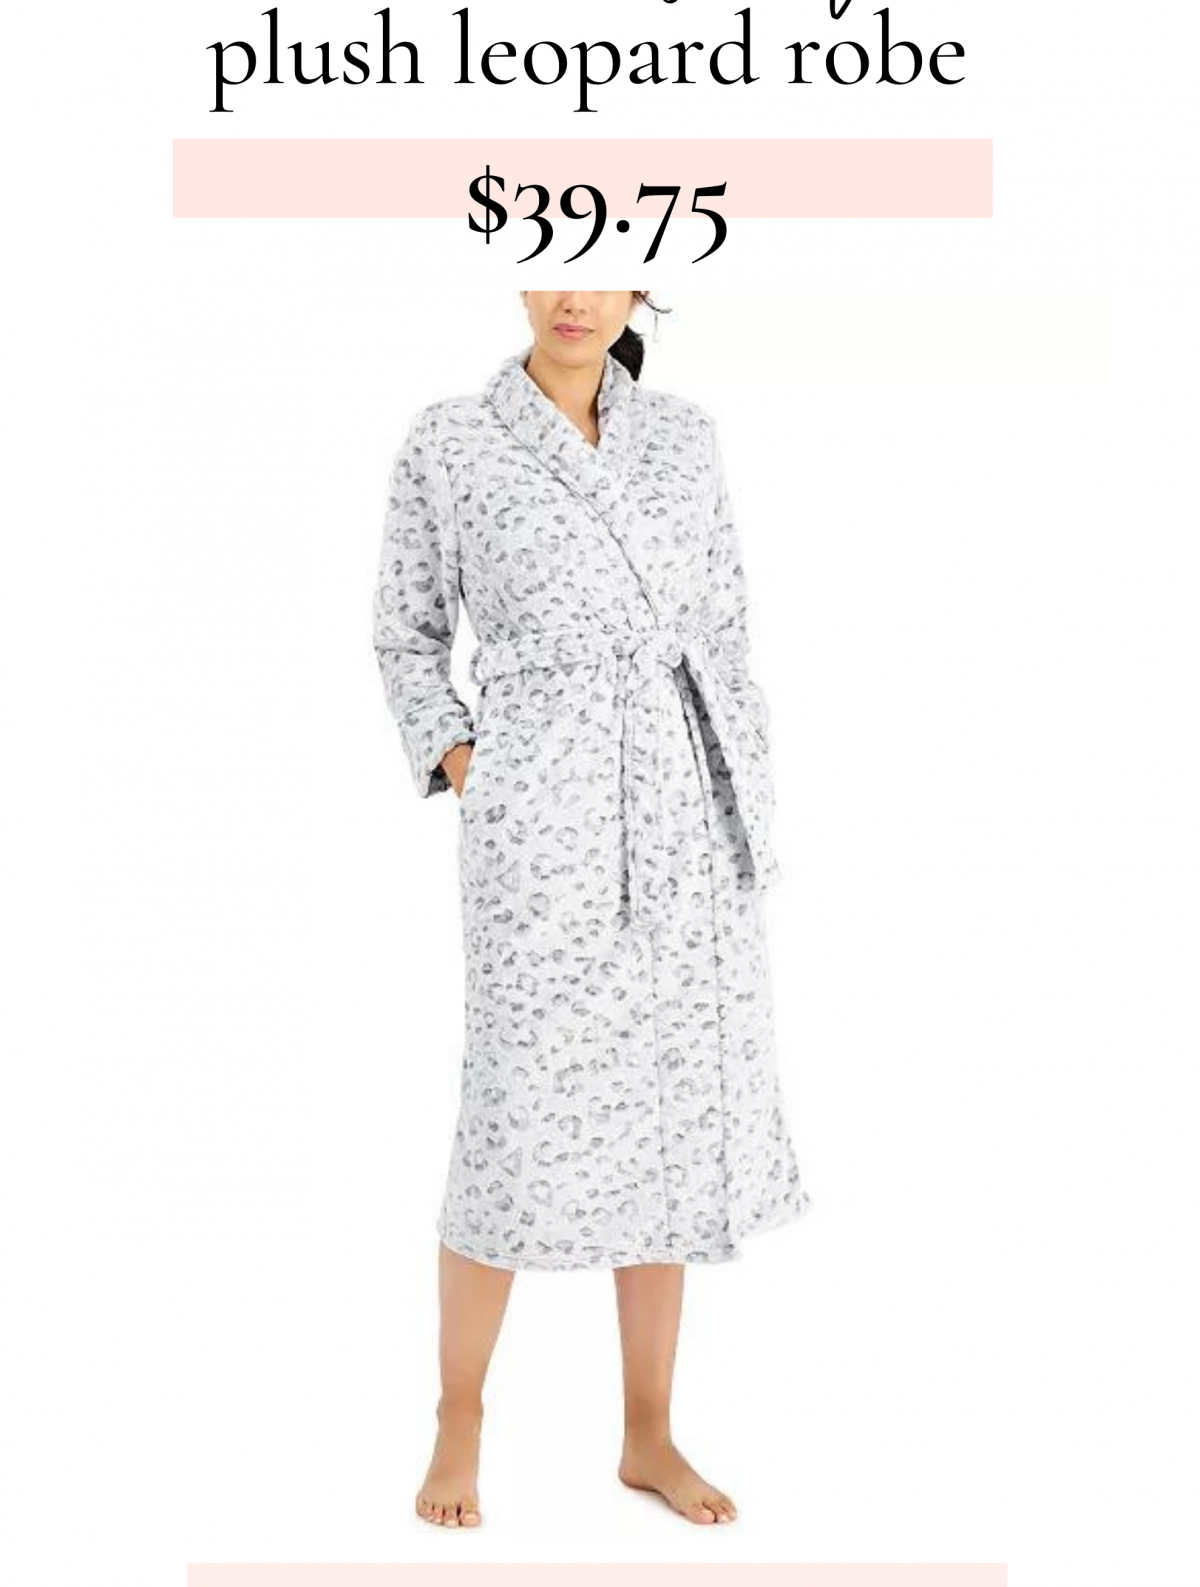 Robe on sale